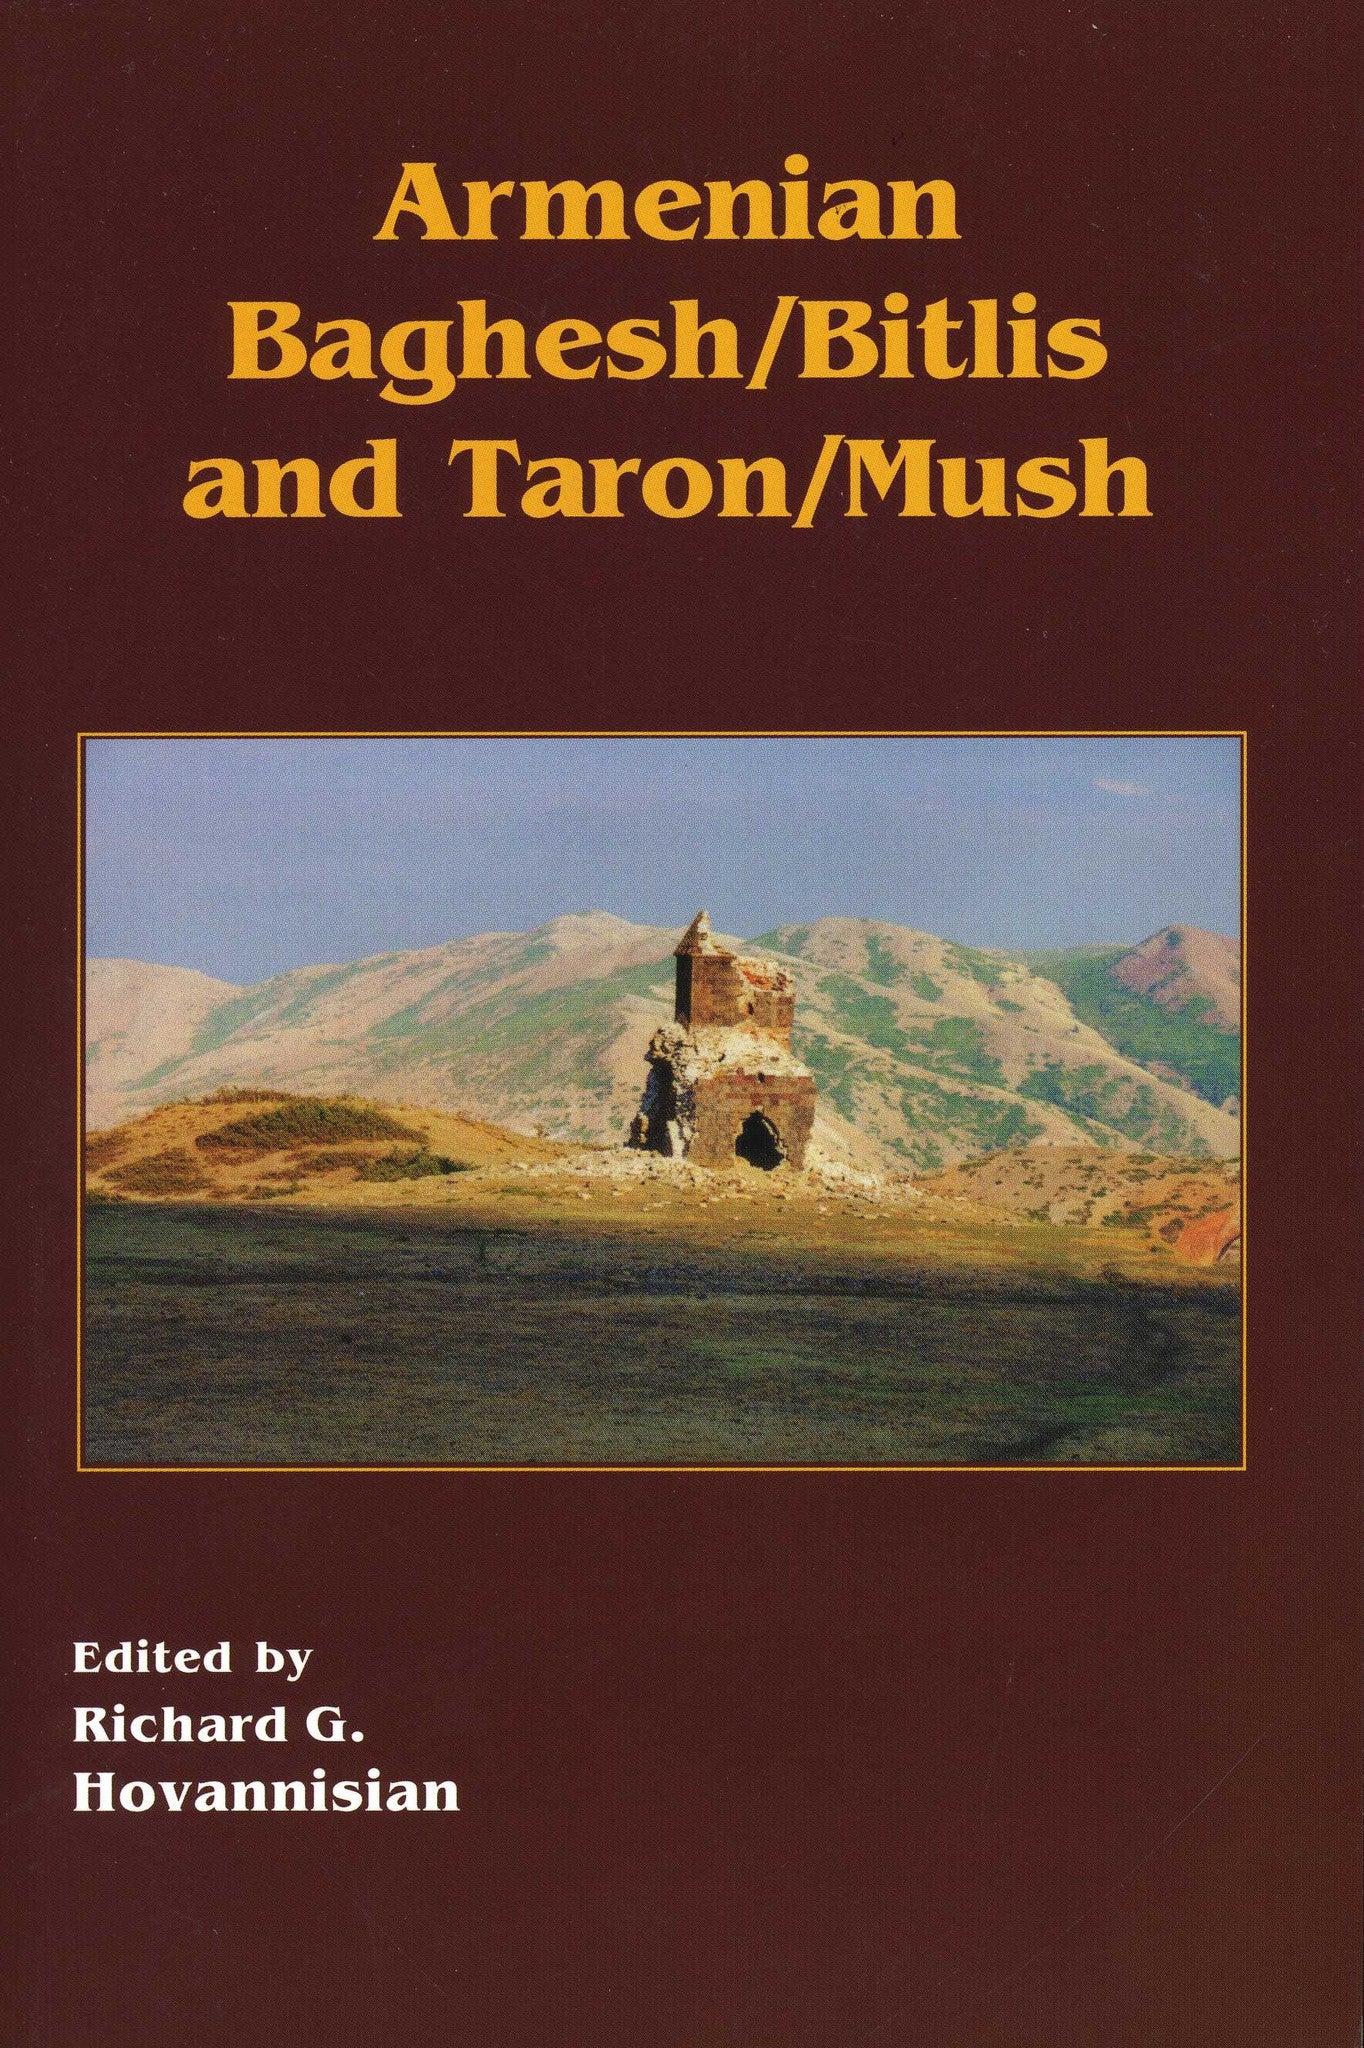 ARMENIAN BAGHESH/BITLIS AND TARON